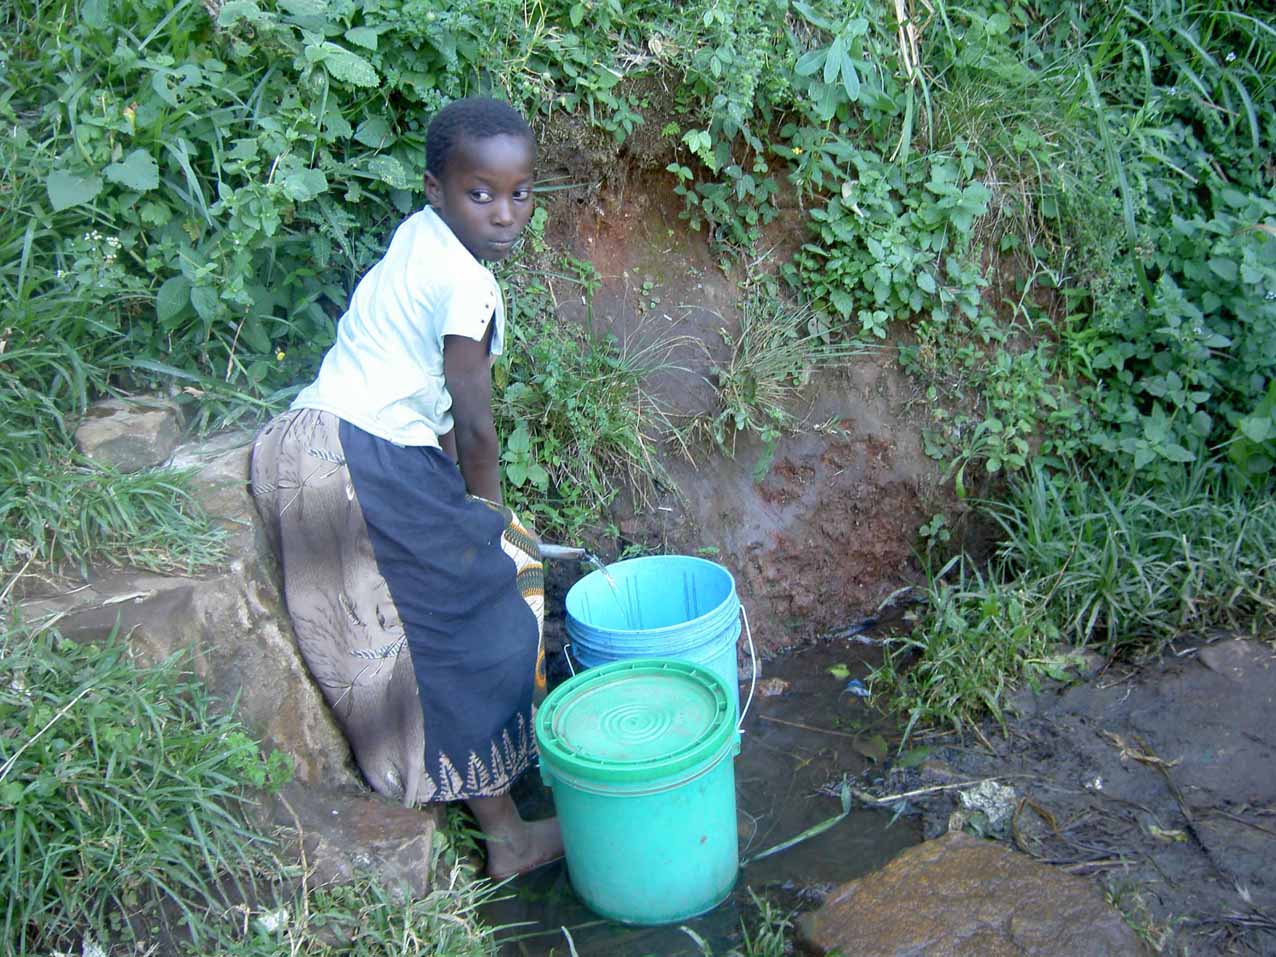 Ein junges Mädchen füllt zwei Eimer mit Wasser. Das Wasser kommt aus einem kleinen Rinnsal aus dem Berg. Das Mädchen schmiegt sich eng an den Hügel, um nicht abzurutschen.